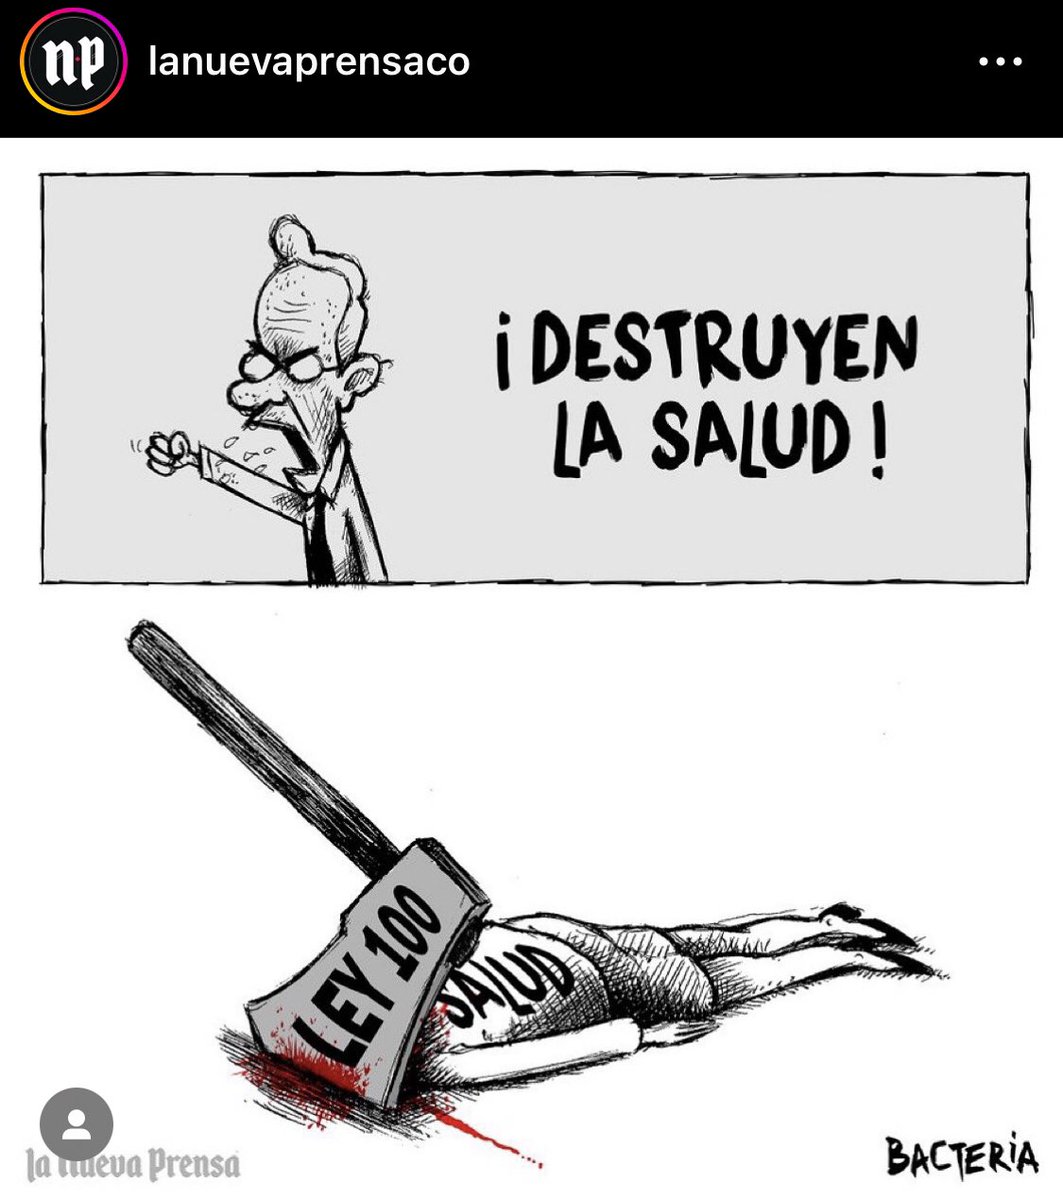 Tremenda caricatura del Matarife Álvaro Uribe Vélez y la Ley 100.